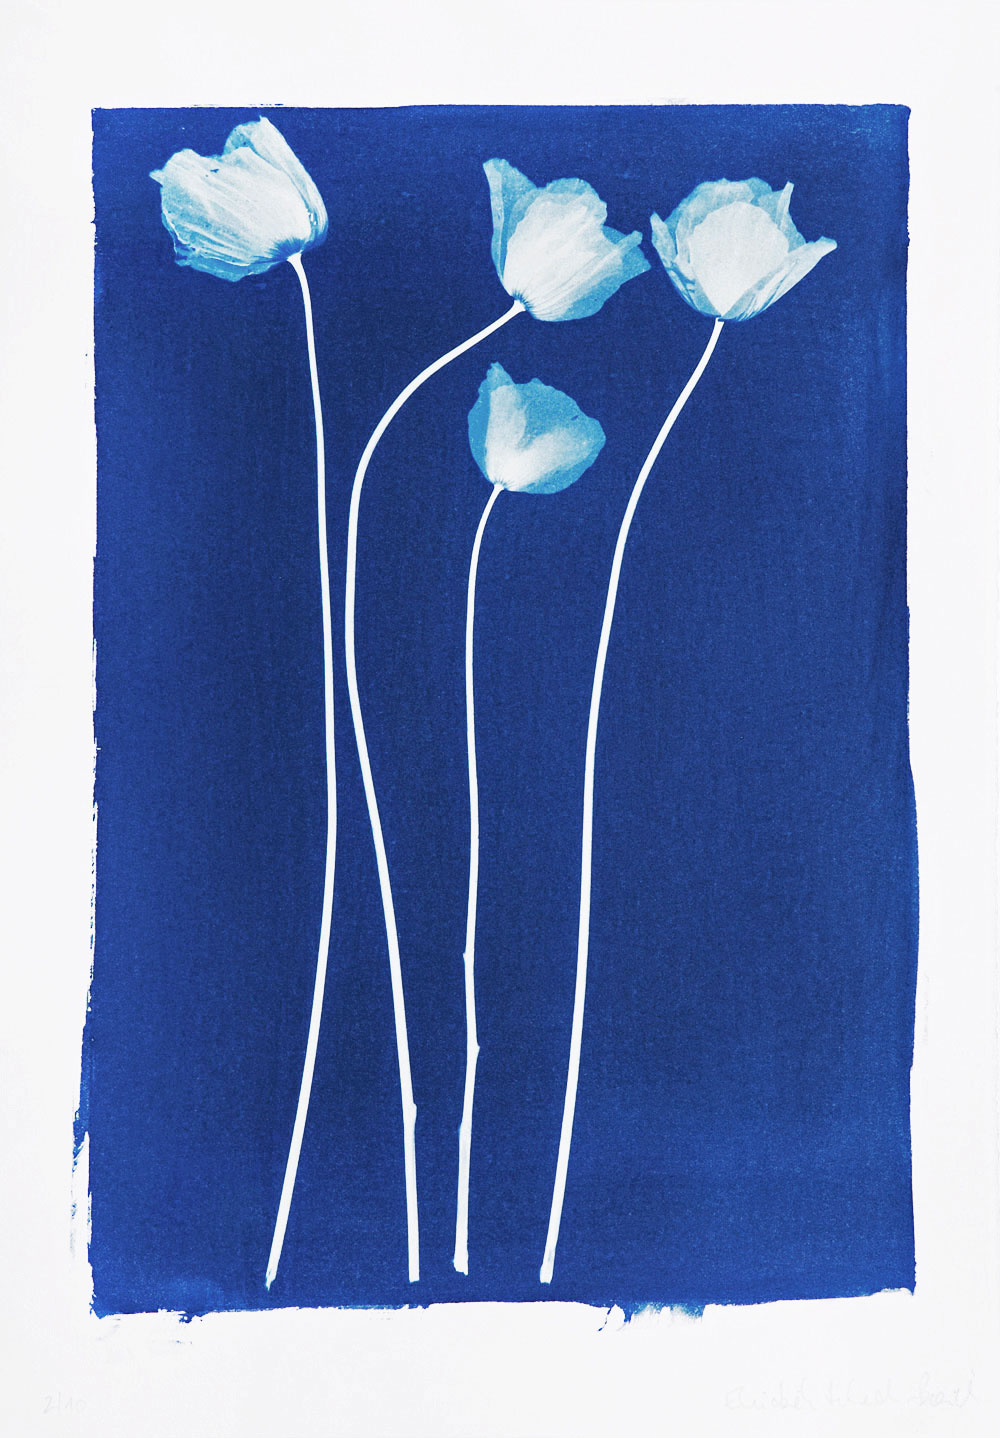 Vier Mohnblumen, Blau